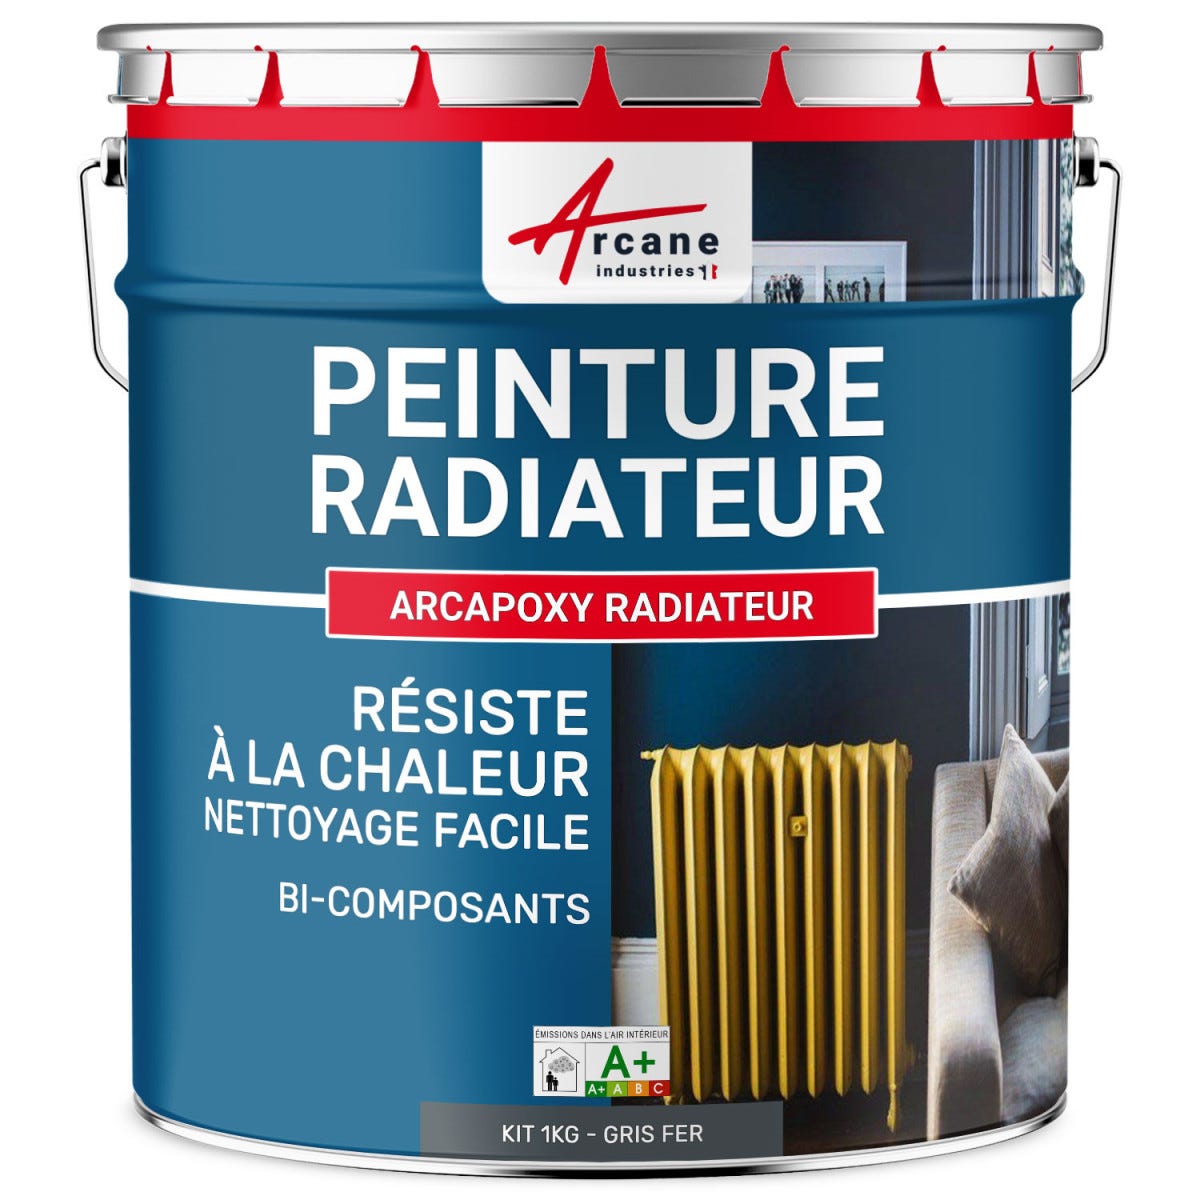 Peinture Radiateur fonte acier alu - PEINTURE RADIATEUR - 1 kg (jusqu'à 5 m² en 2 couches) - Gris fer - RAL 7011 - ARCANE INDUSTRIES 0